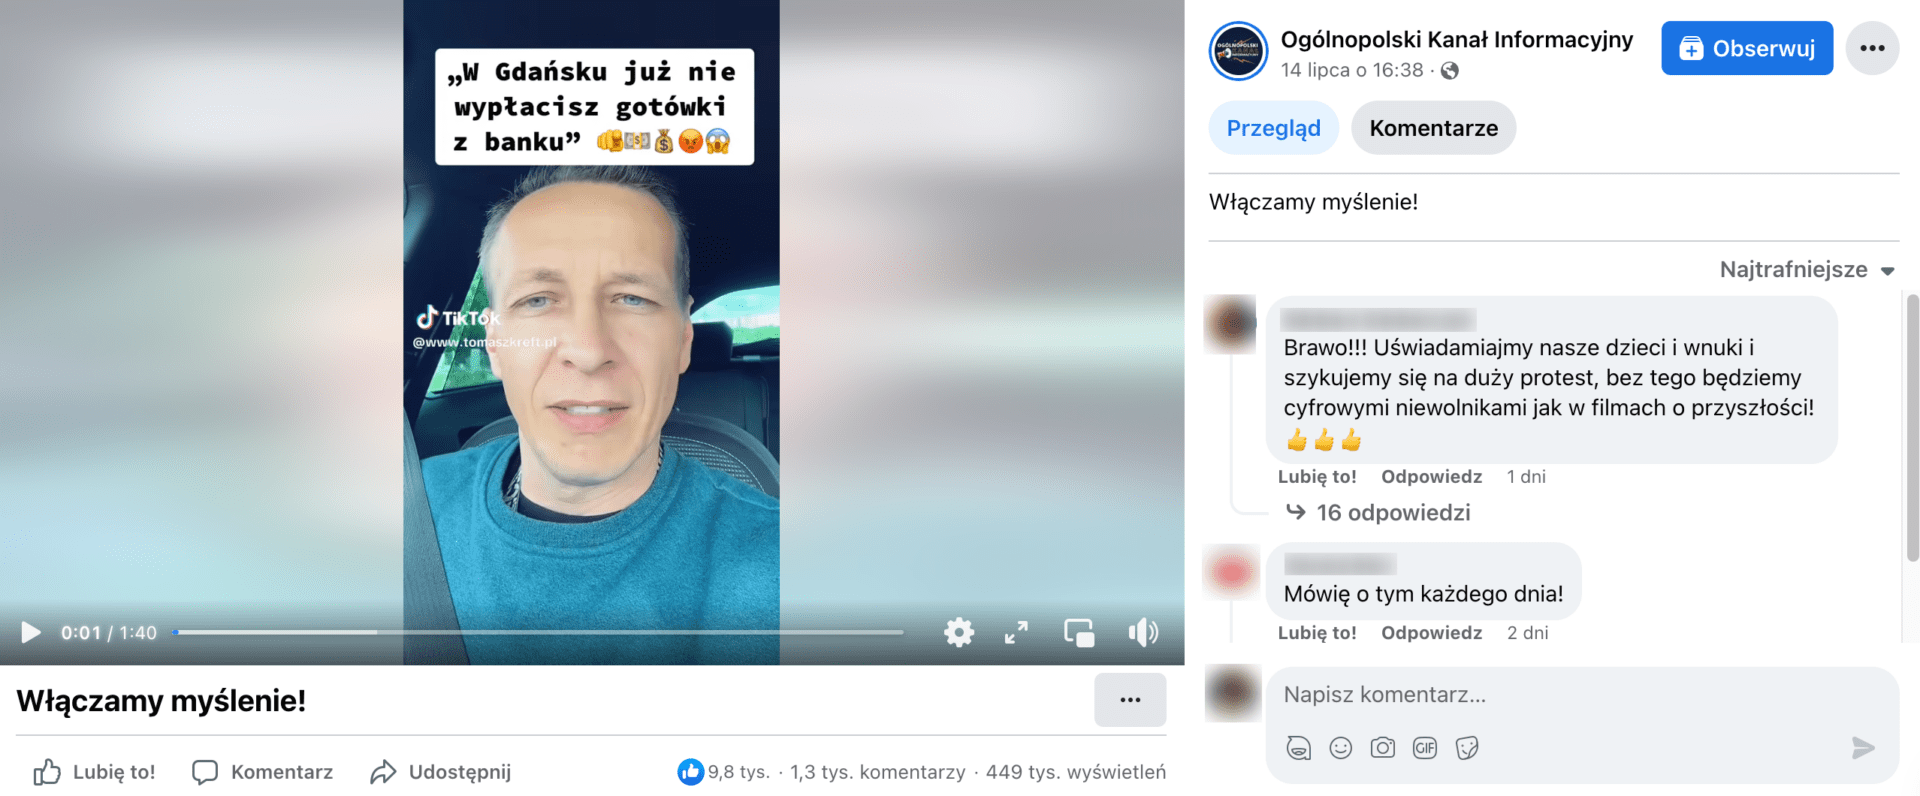 Zrzut ekranu posta na Facebooku, w którym zamieszczono omawiane nagranie. Widoczny jest mężczyzna w niebieskiej bluzie siedzący w samochodzie, nad nim napis o treści: „W Gdańsku już nie wypłacisz gotówki z banku”.